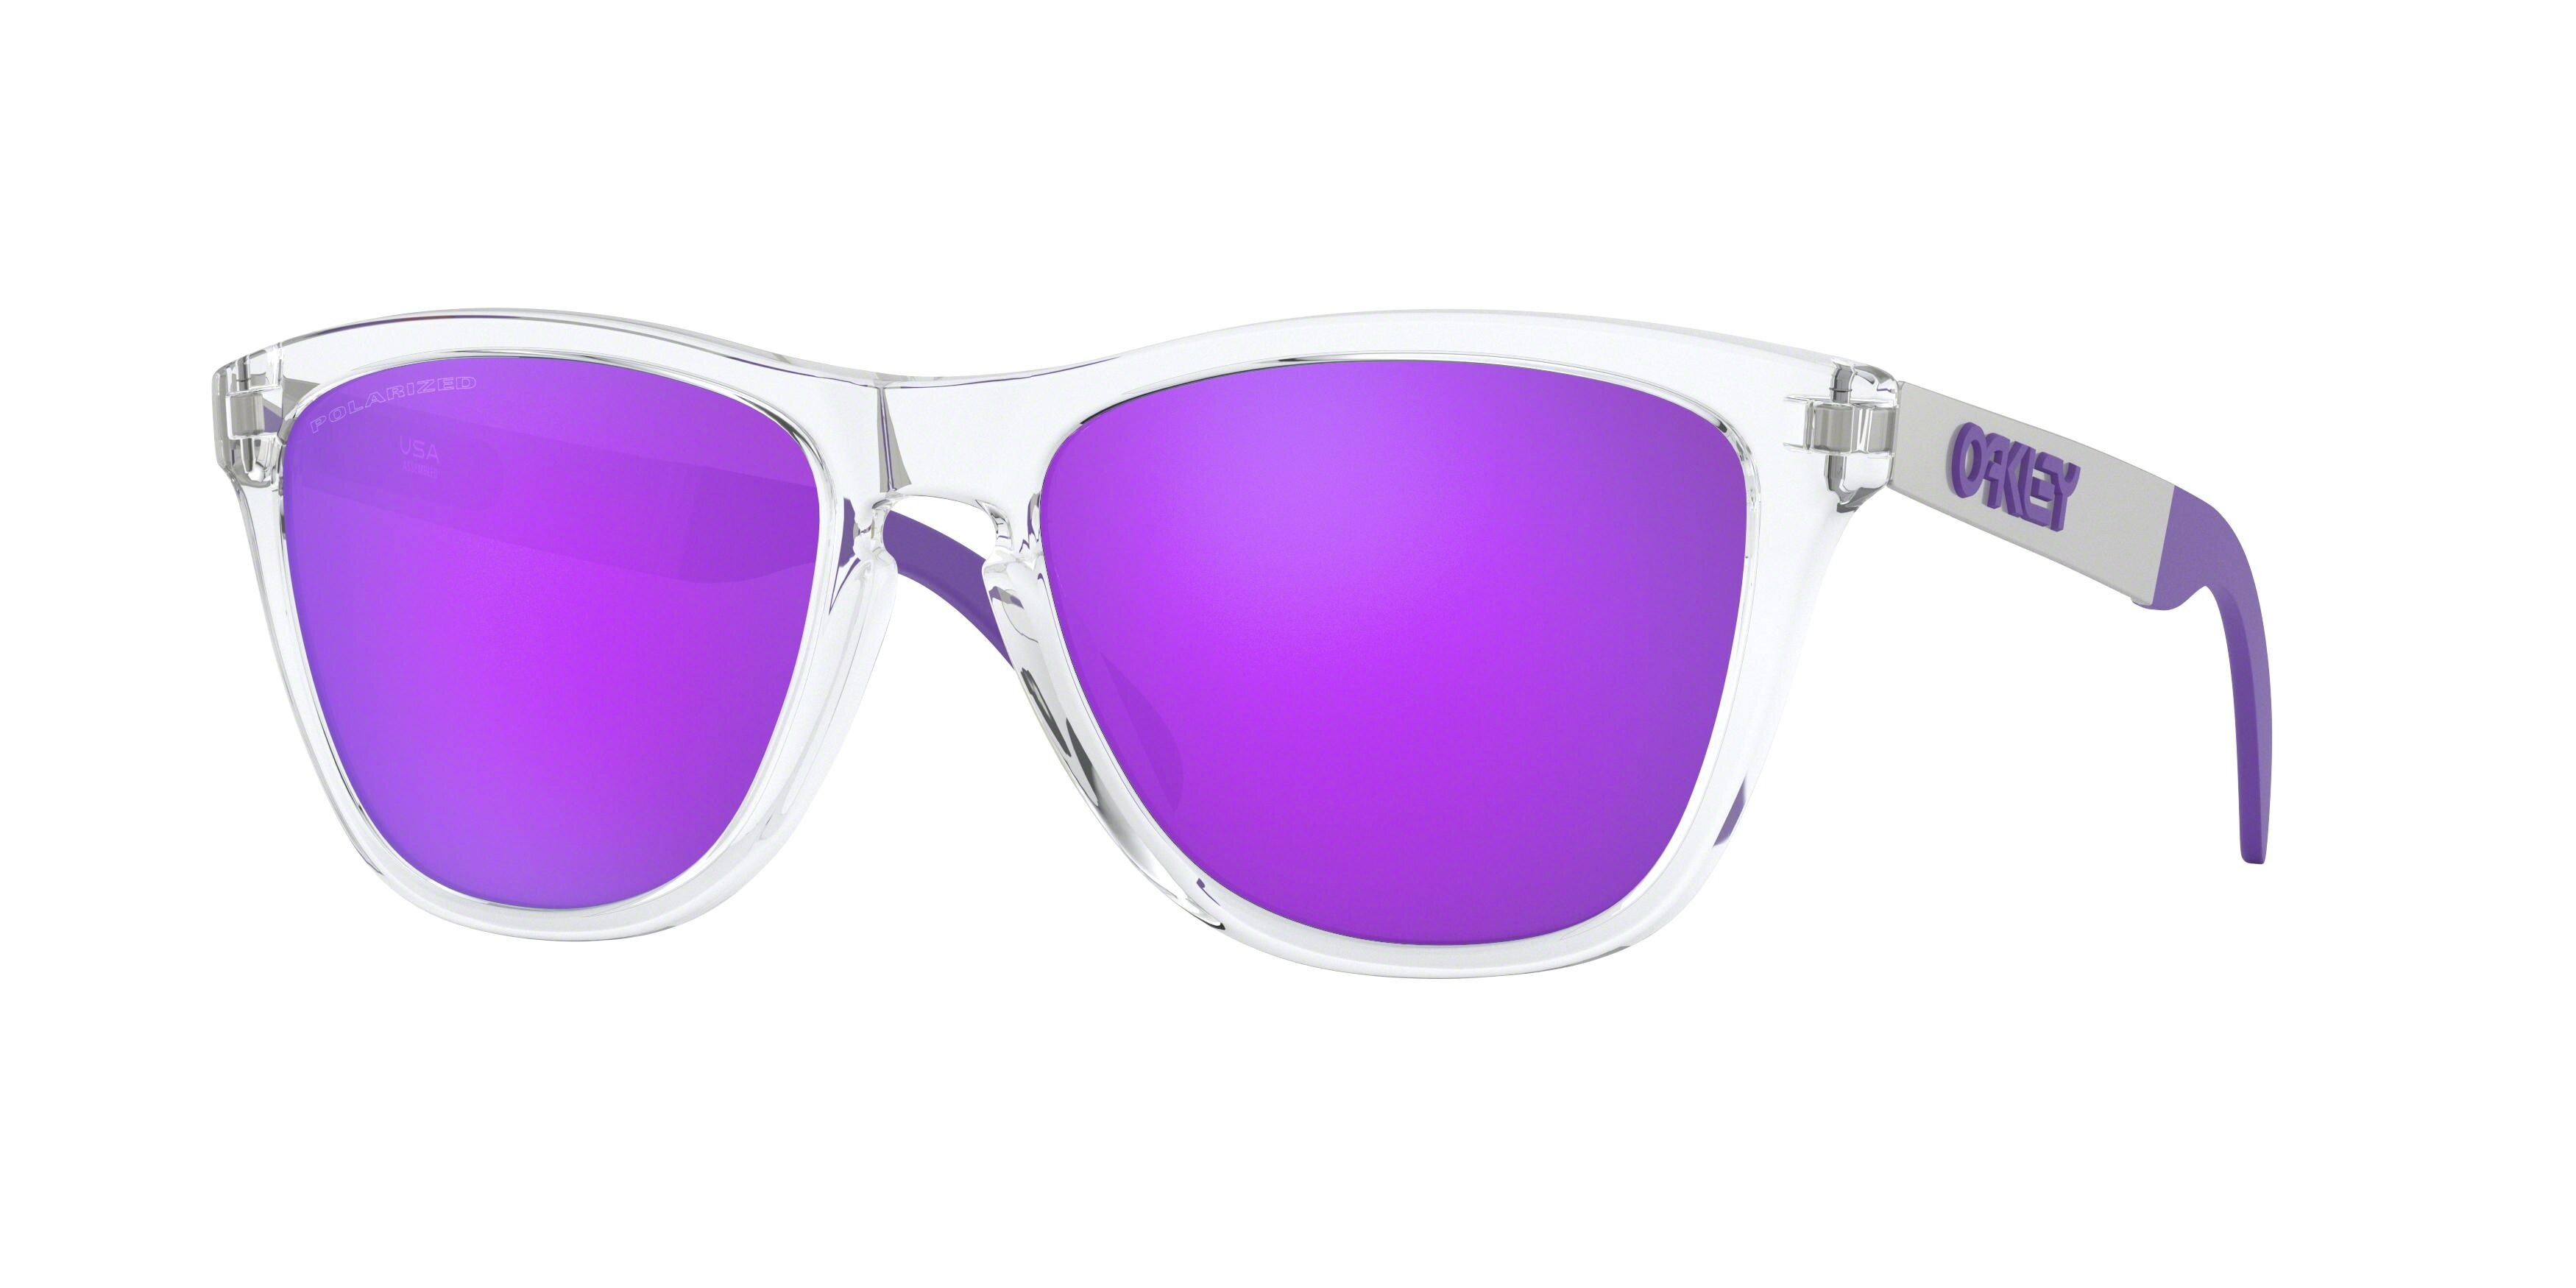  violet iridium polarized/polished clear